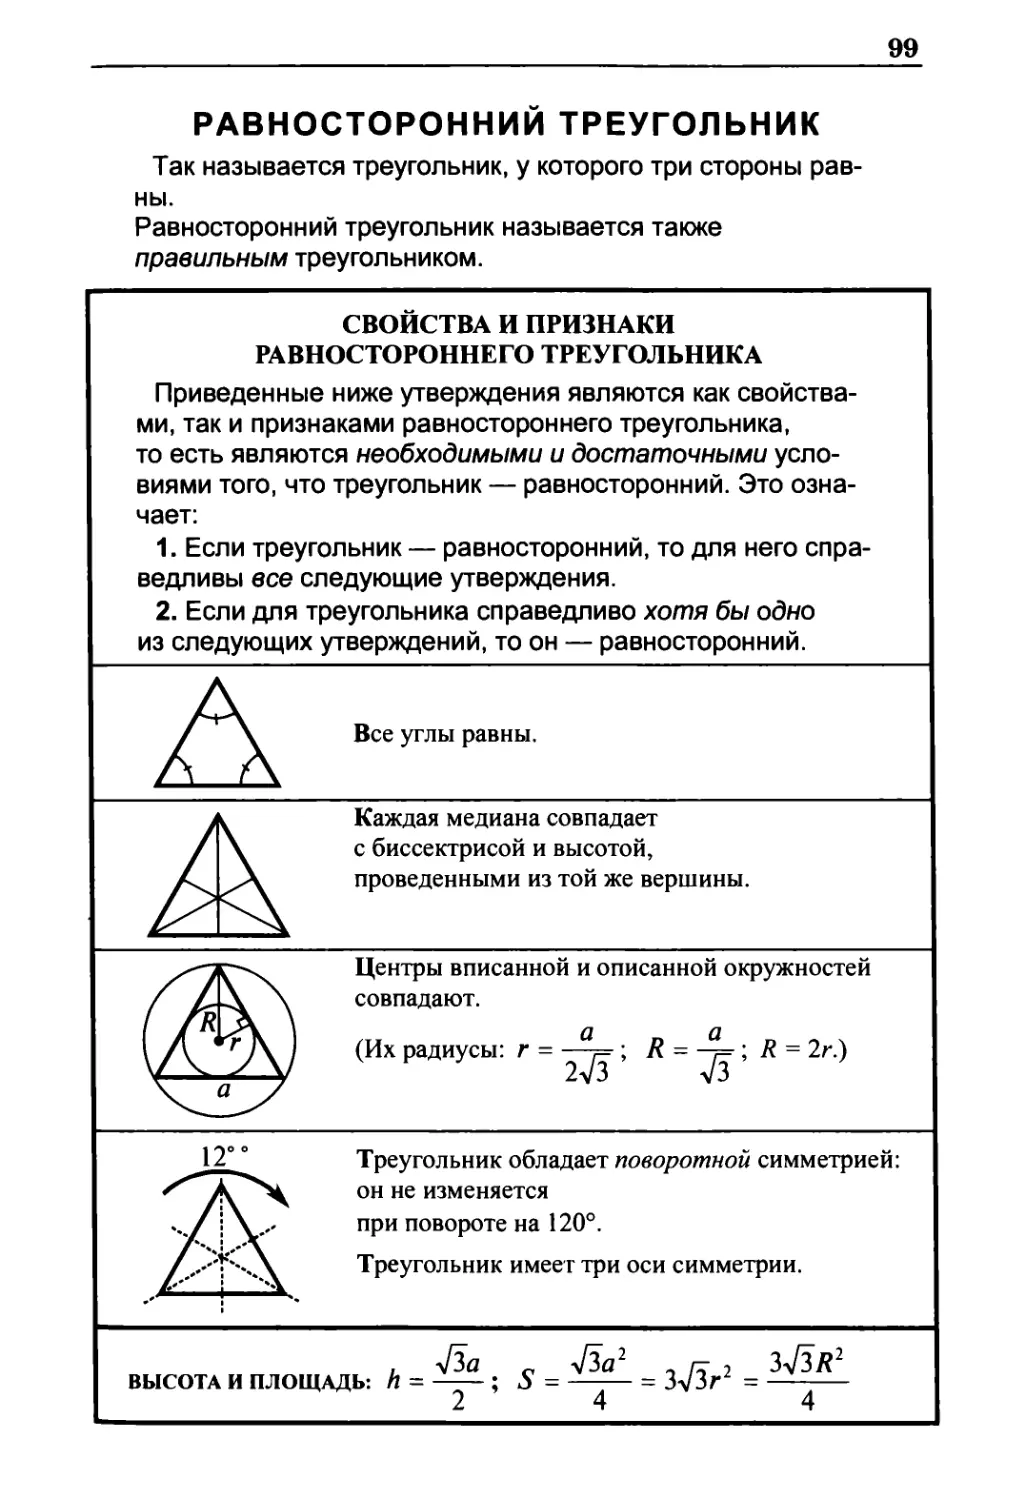 Равносторонний треугольник
Свойства и признаки равностороннего треугольника
Высота и площадь равностороннего треугольника